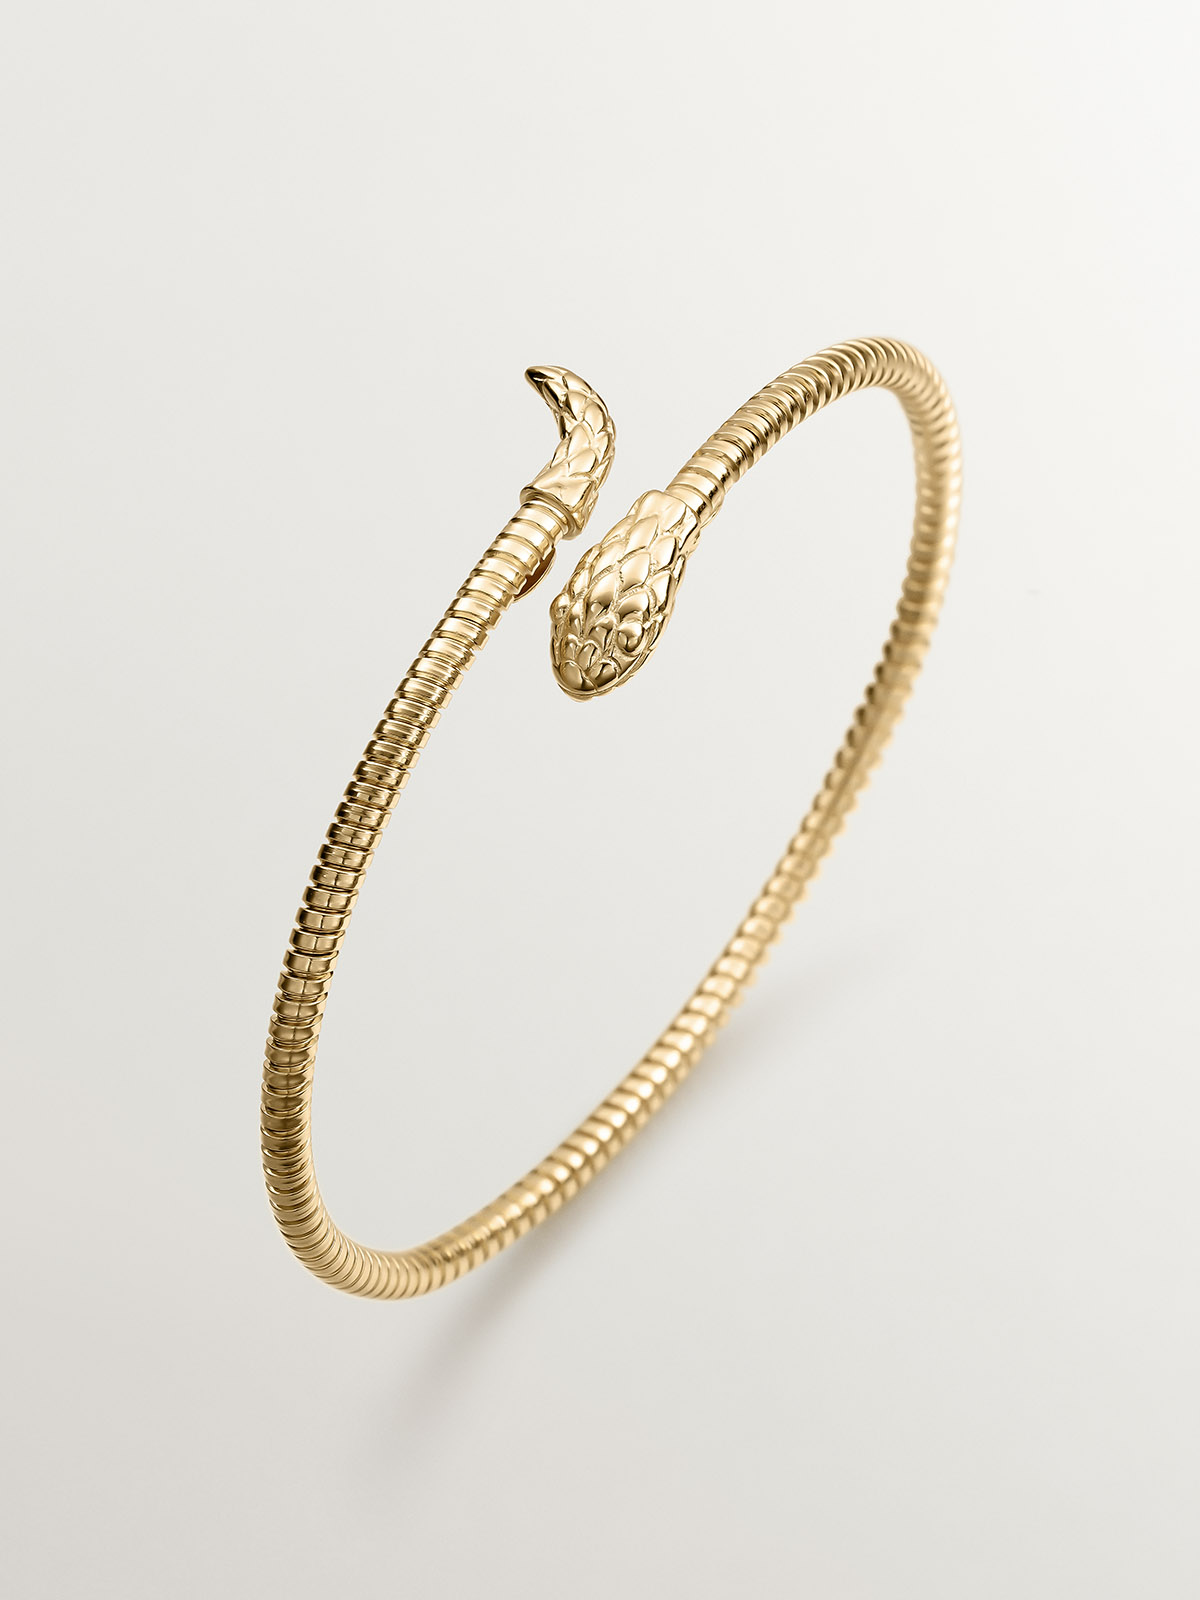 Bracelet en argent 925 plaqué or jaune 18K en forme de serpent